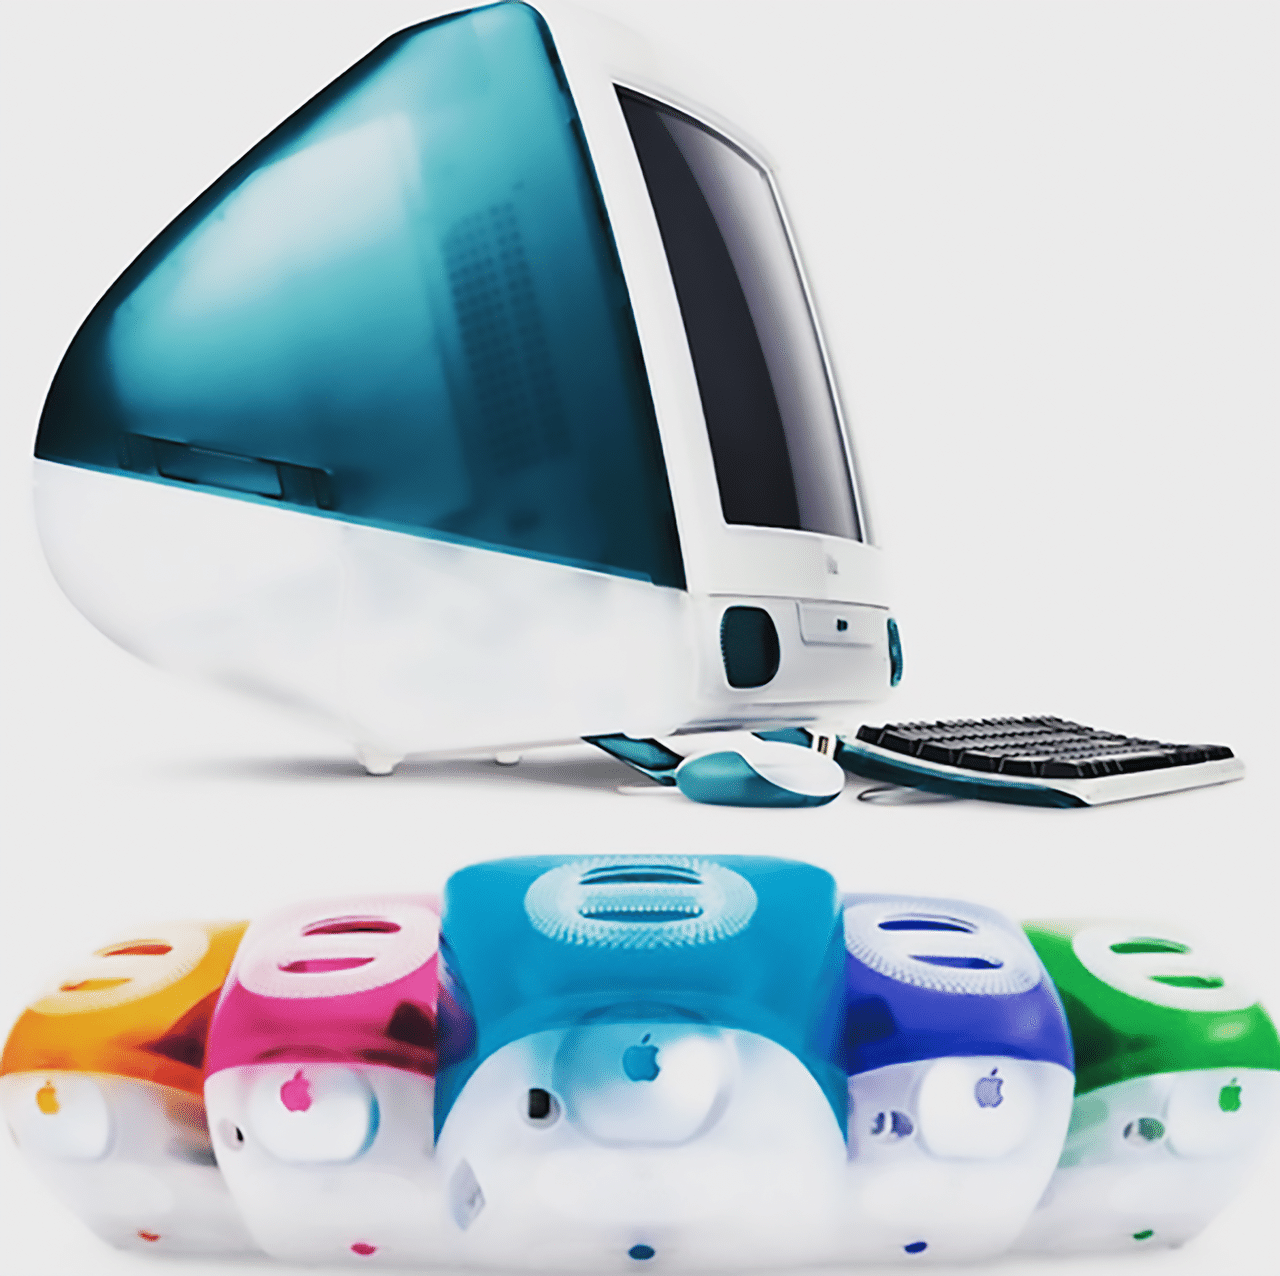 初代「iMac」 - Macデスクトップ